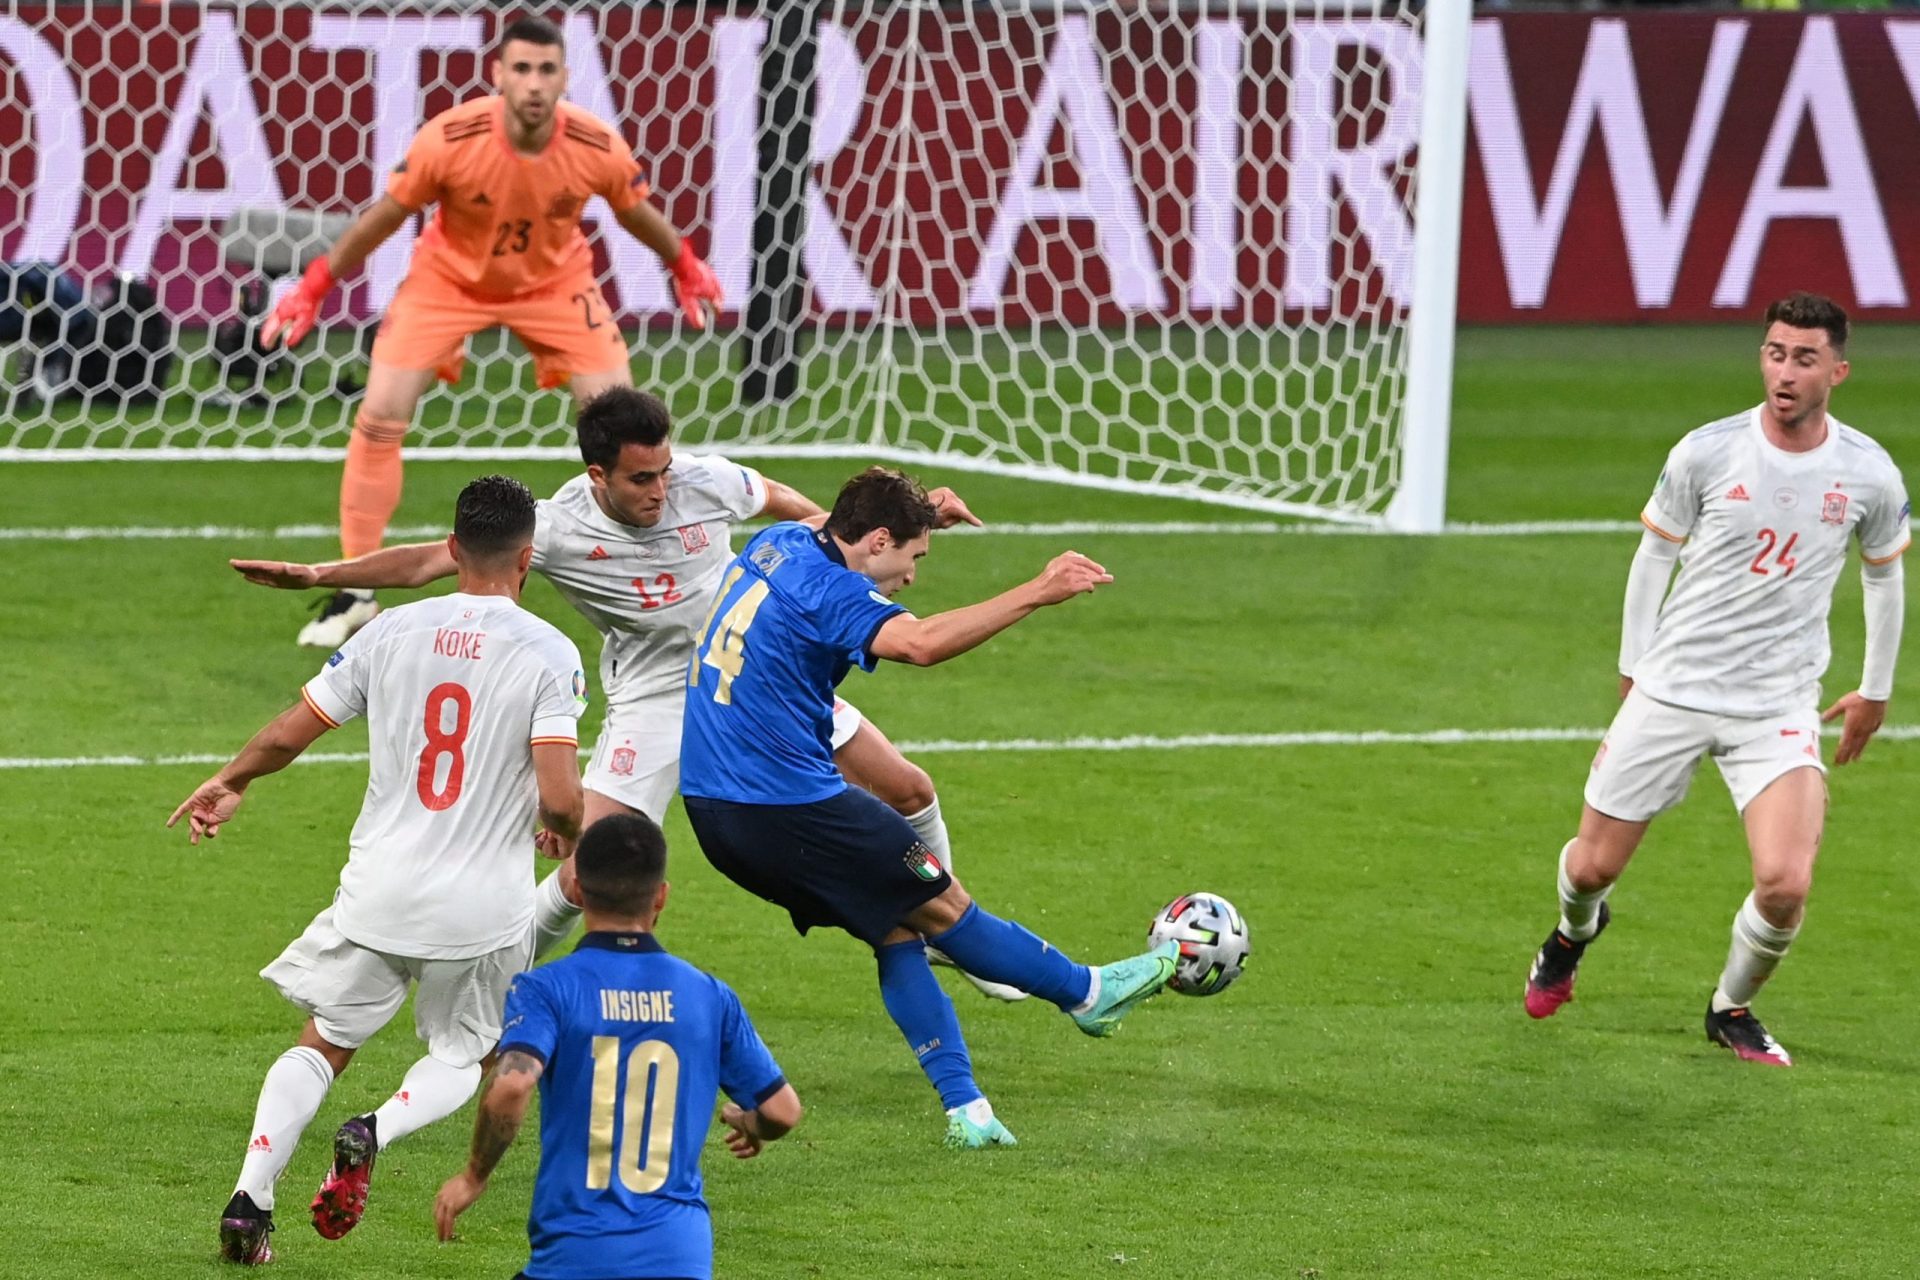 Itália está na final do Euro’2020 depois de vencer Espanha nas grandes penalidades